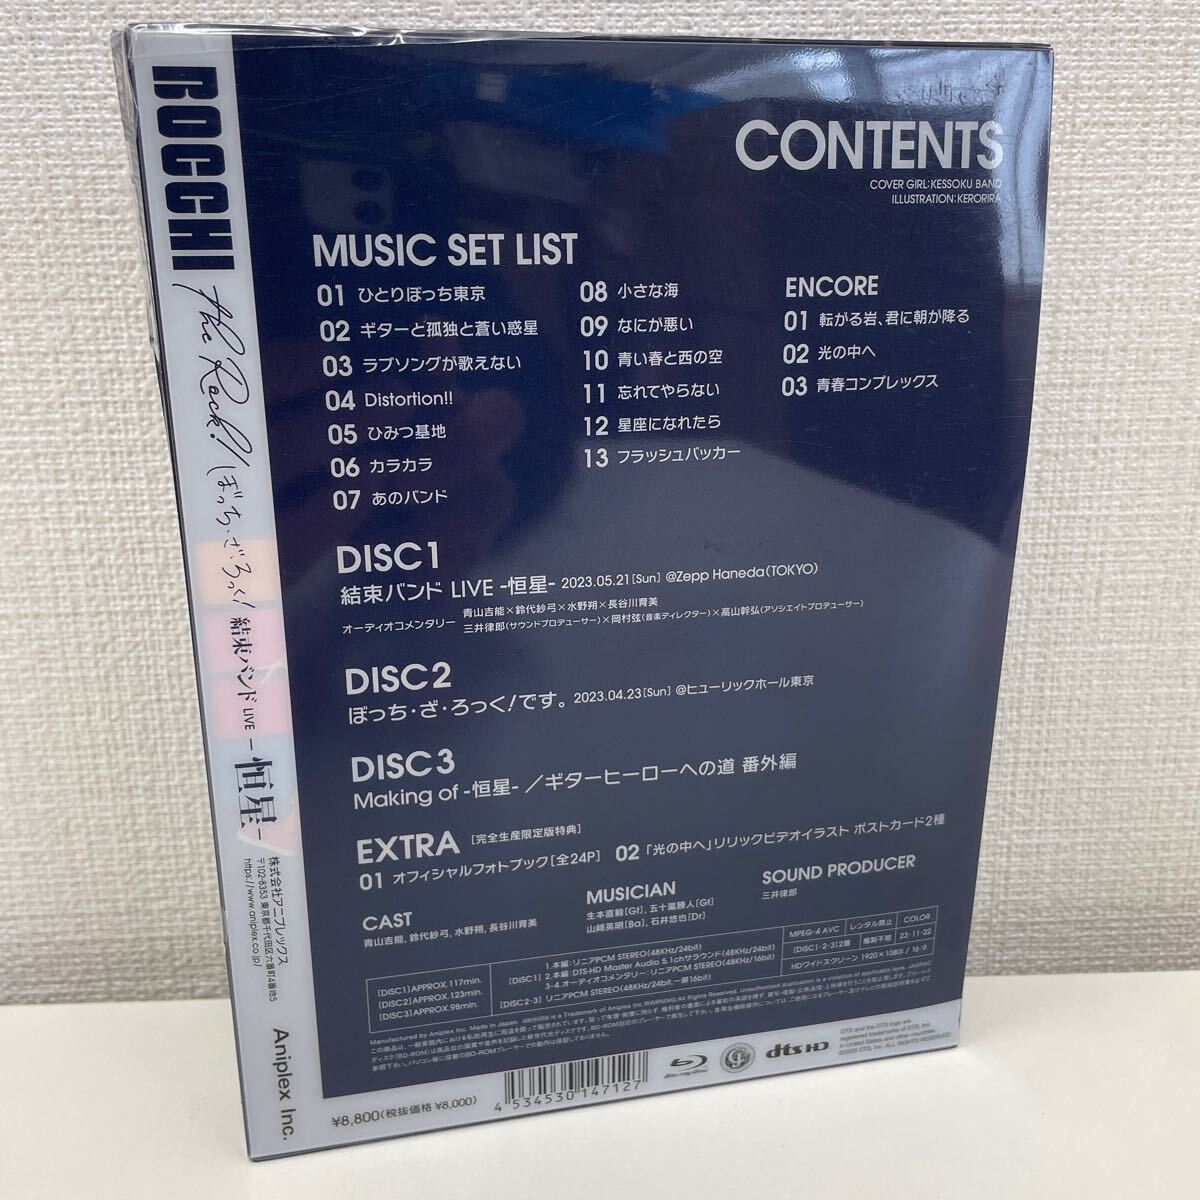 [1 иен старт ] кабельная стяжка LIVE -. звезда - совершенно производство ограниченая версия Blu-ray3 листов комплект BOCCHI the rock...*.*...